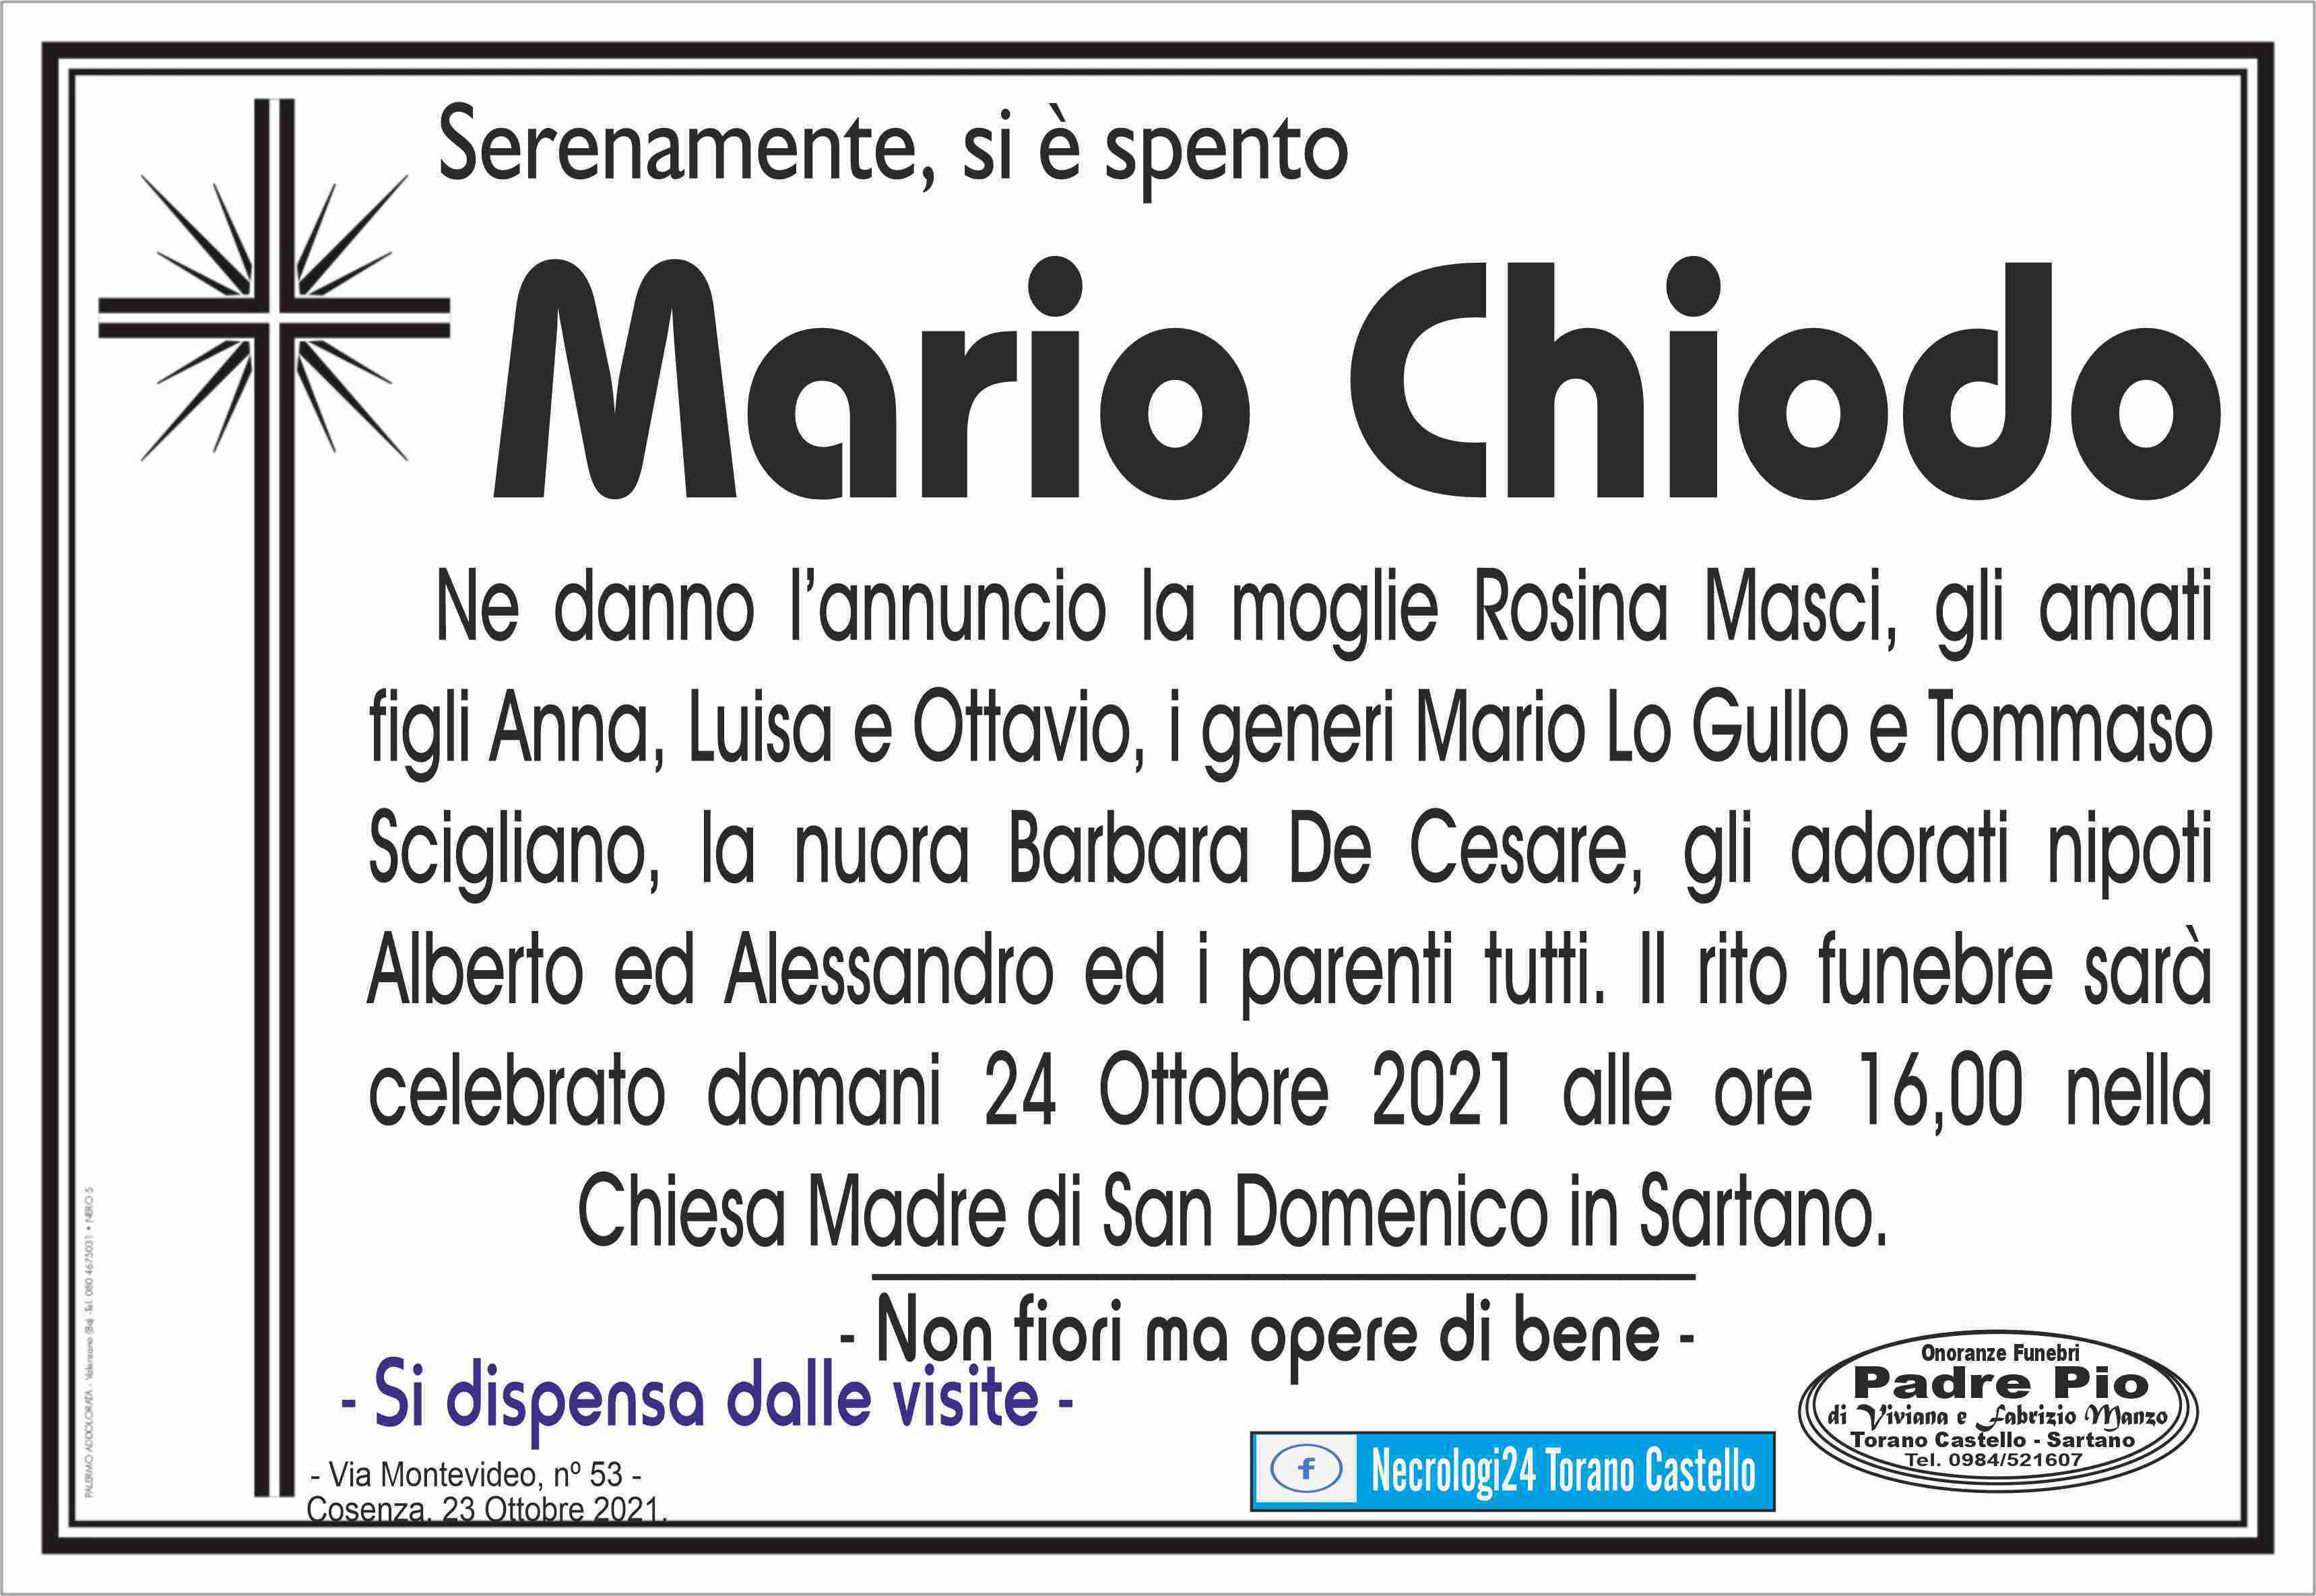 Mario Chiodo